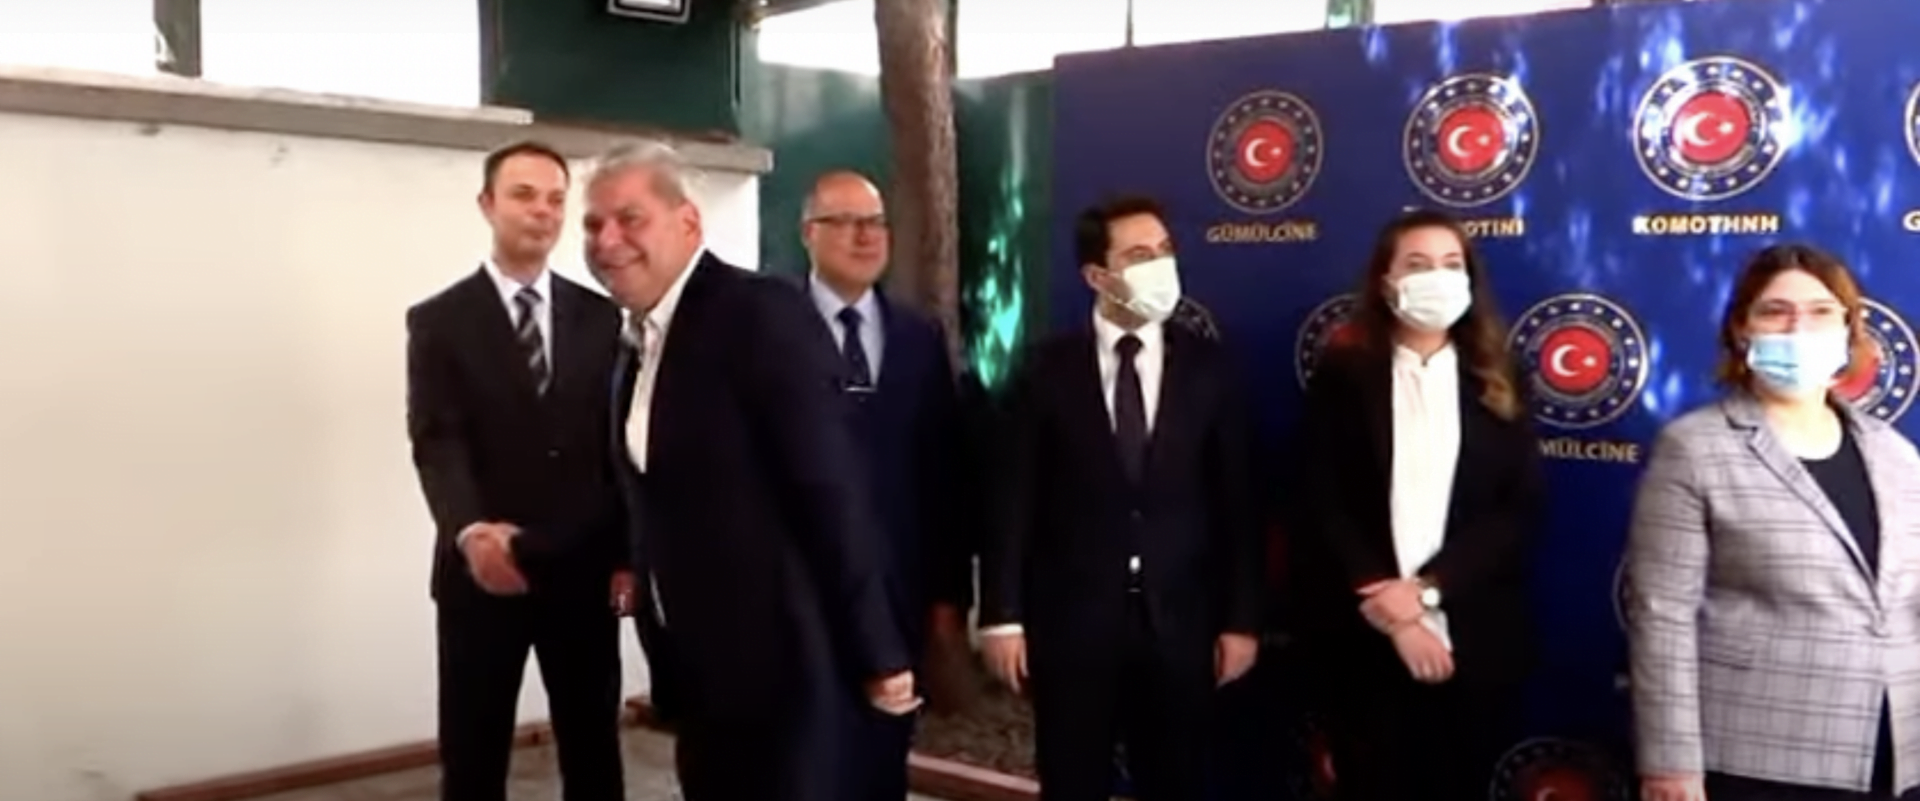 Βουλευτές του ΣΥΡΙΖΑ & του ΚΙΝΑΛ βρέθηκαν σε εκδήλωση του τουρκικού Προξενείου παρουσία του ψευδομουφτή & του DEB